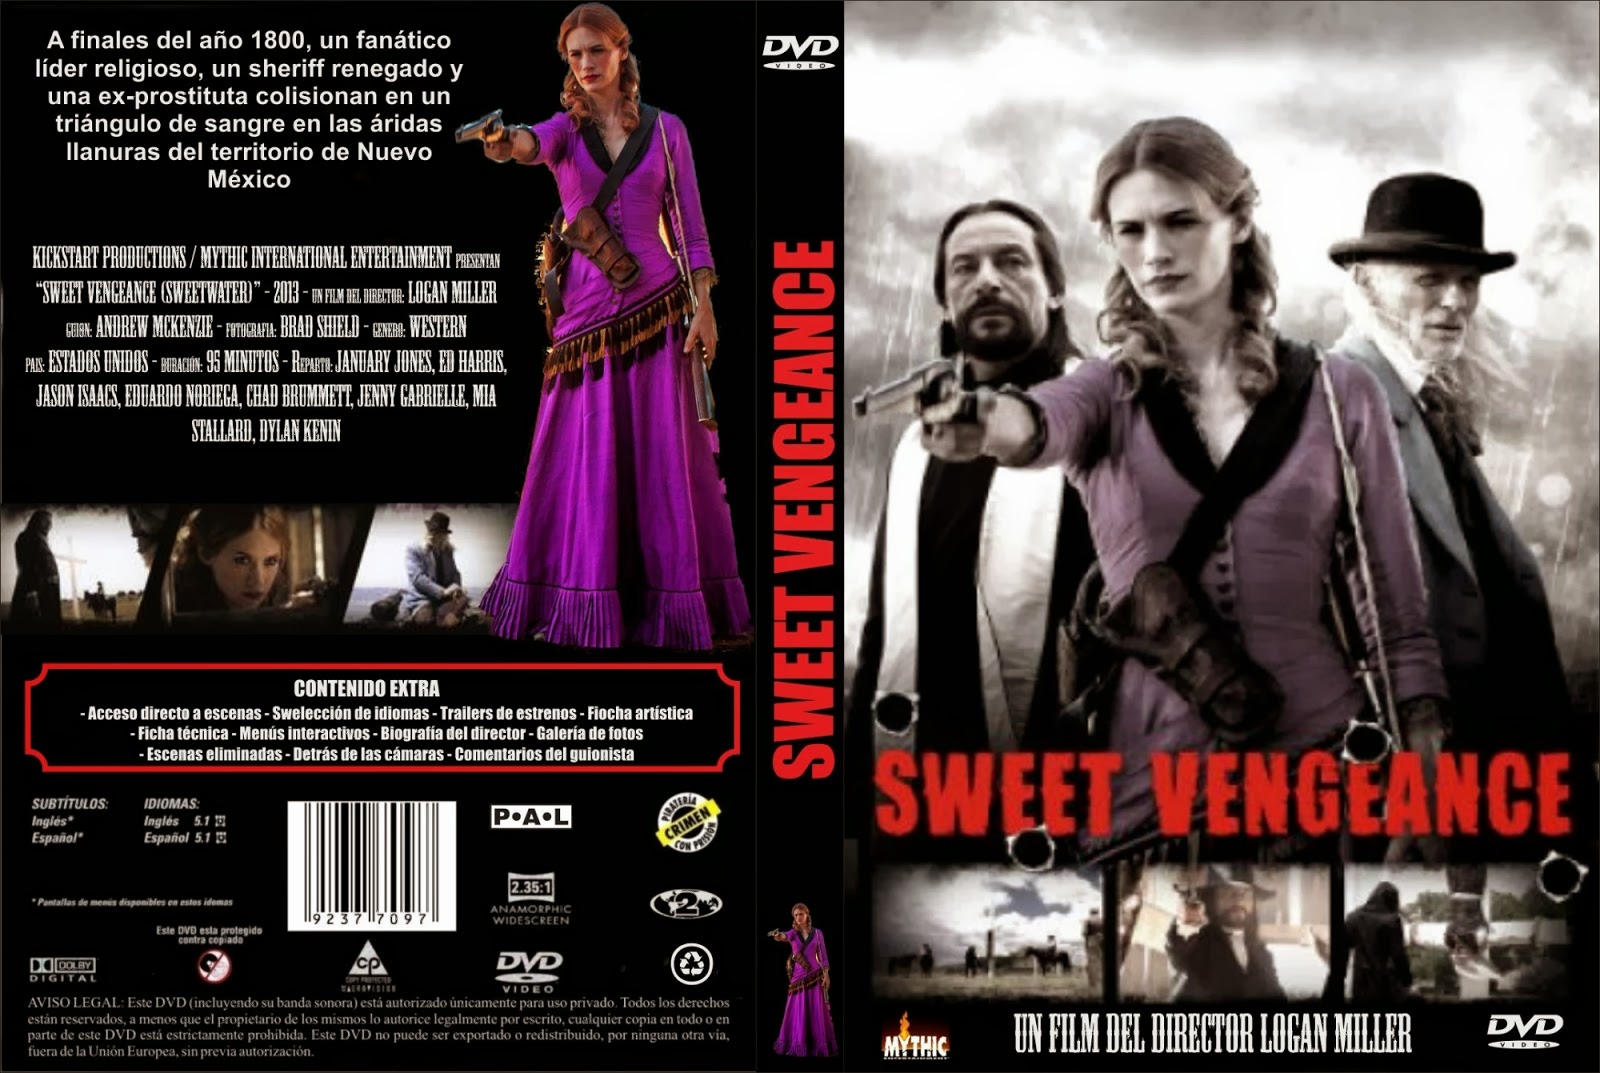 Sweet Vengeance by Elizabeth St. Michel